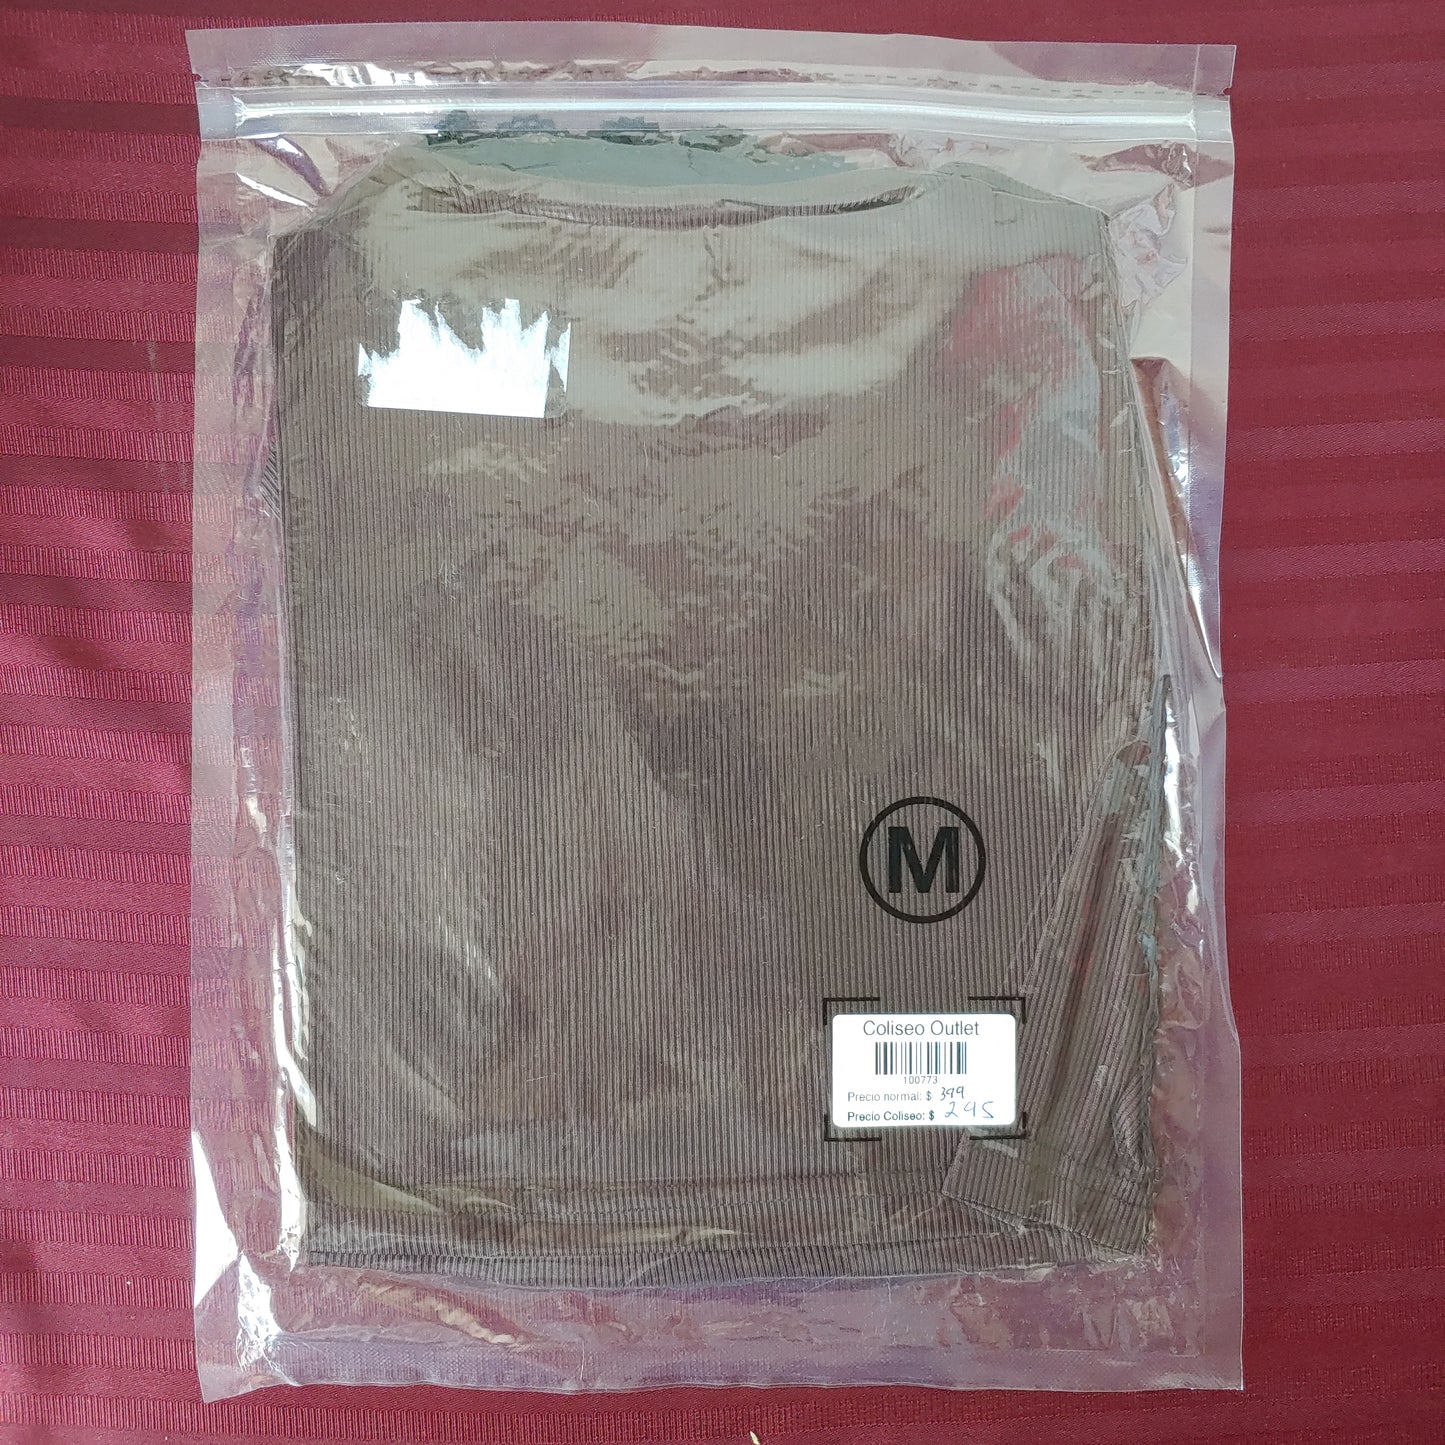 Blusa top manga larga color café y negro talla M (Nuevo)